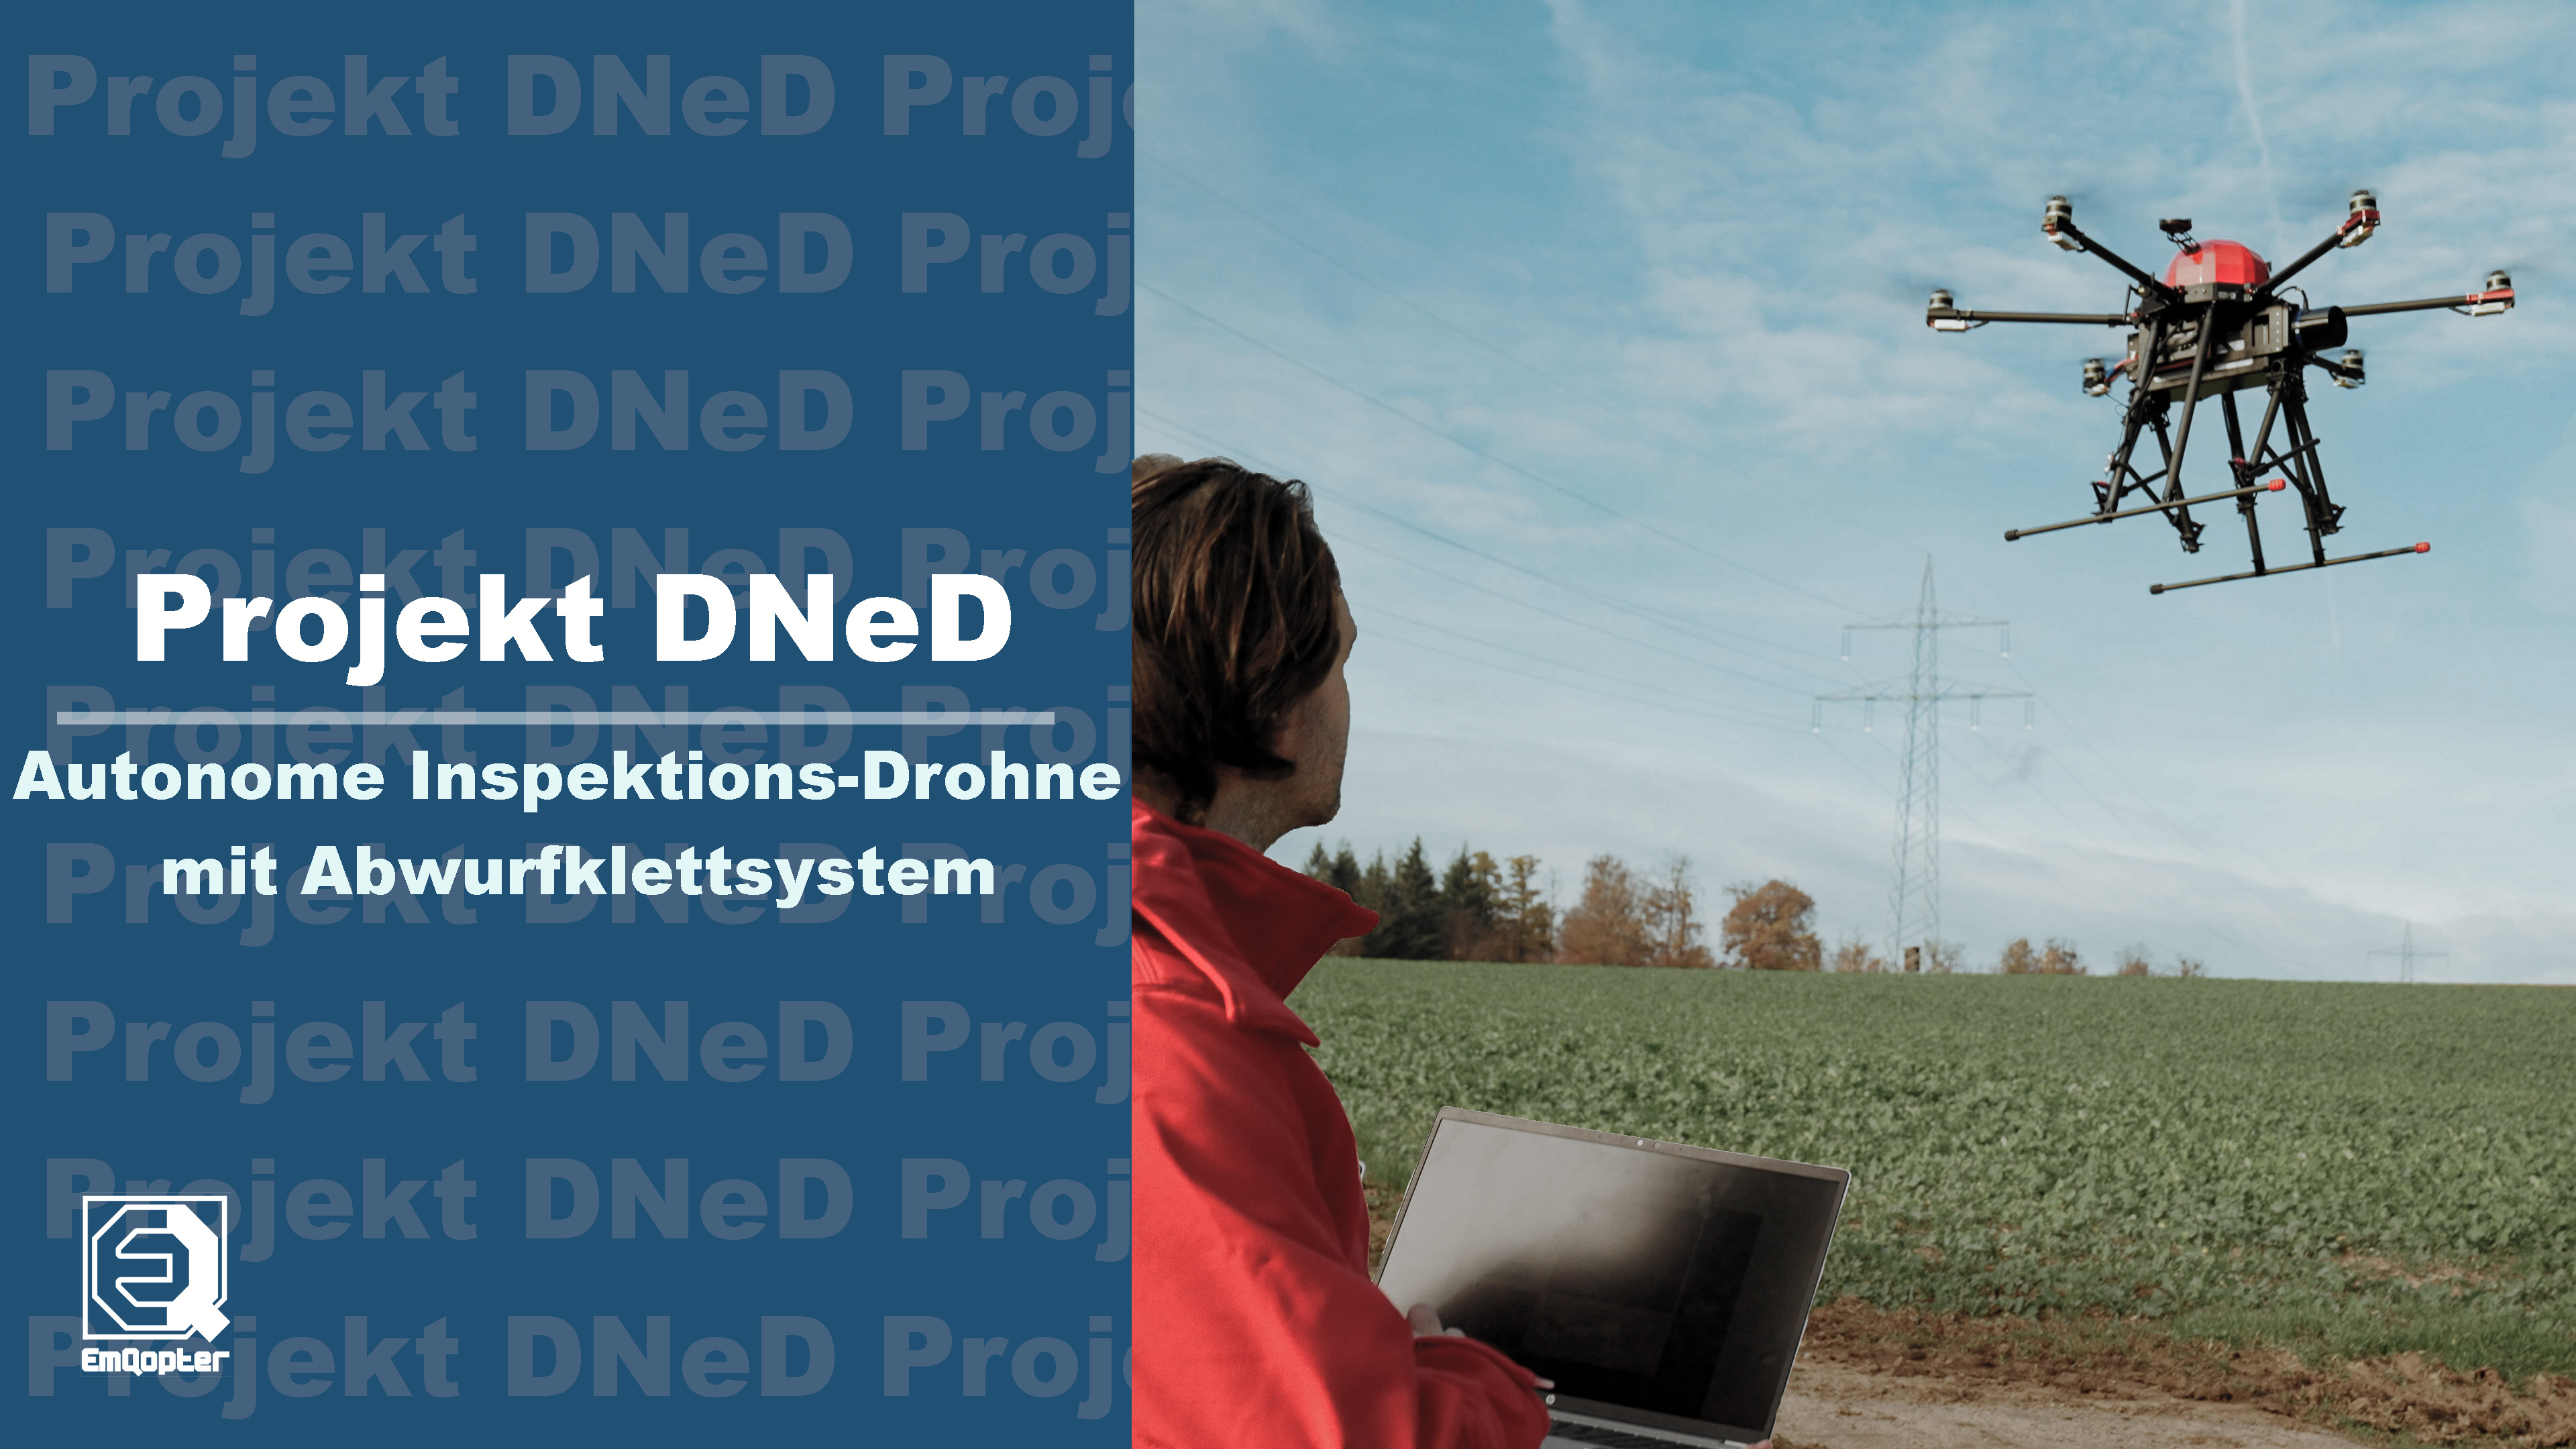 Autonome Inspektions-Drohne mit Abwurfklettsystem - Langes Video